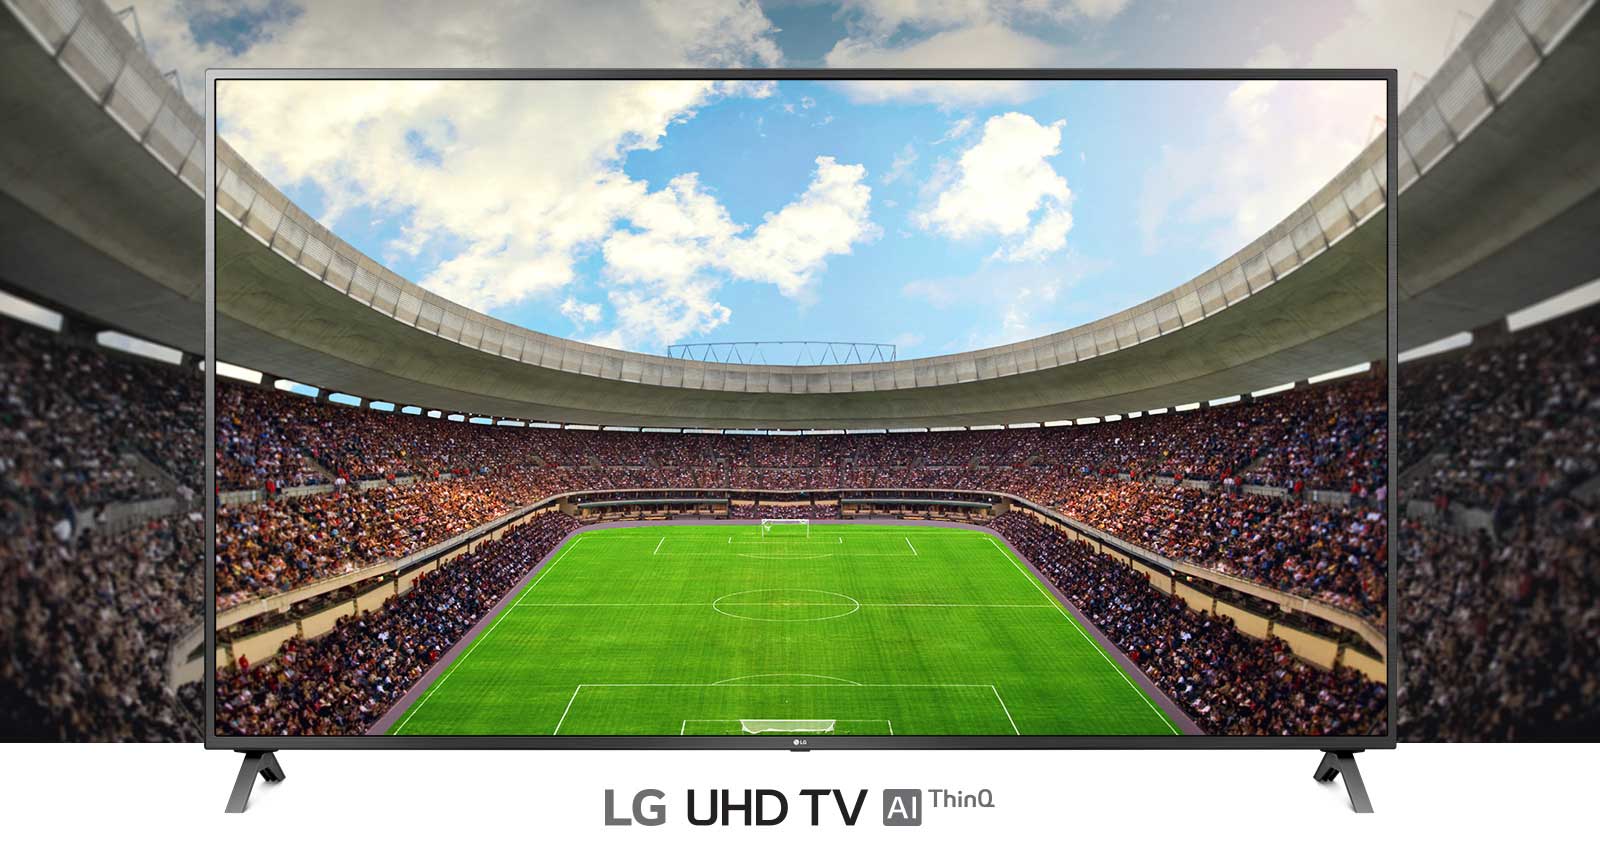 O vedere panoramică a stadionului de fotbal, plin de spectatori, afișat în cadrul unui televizor.